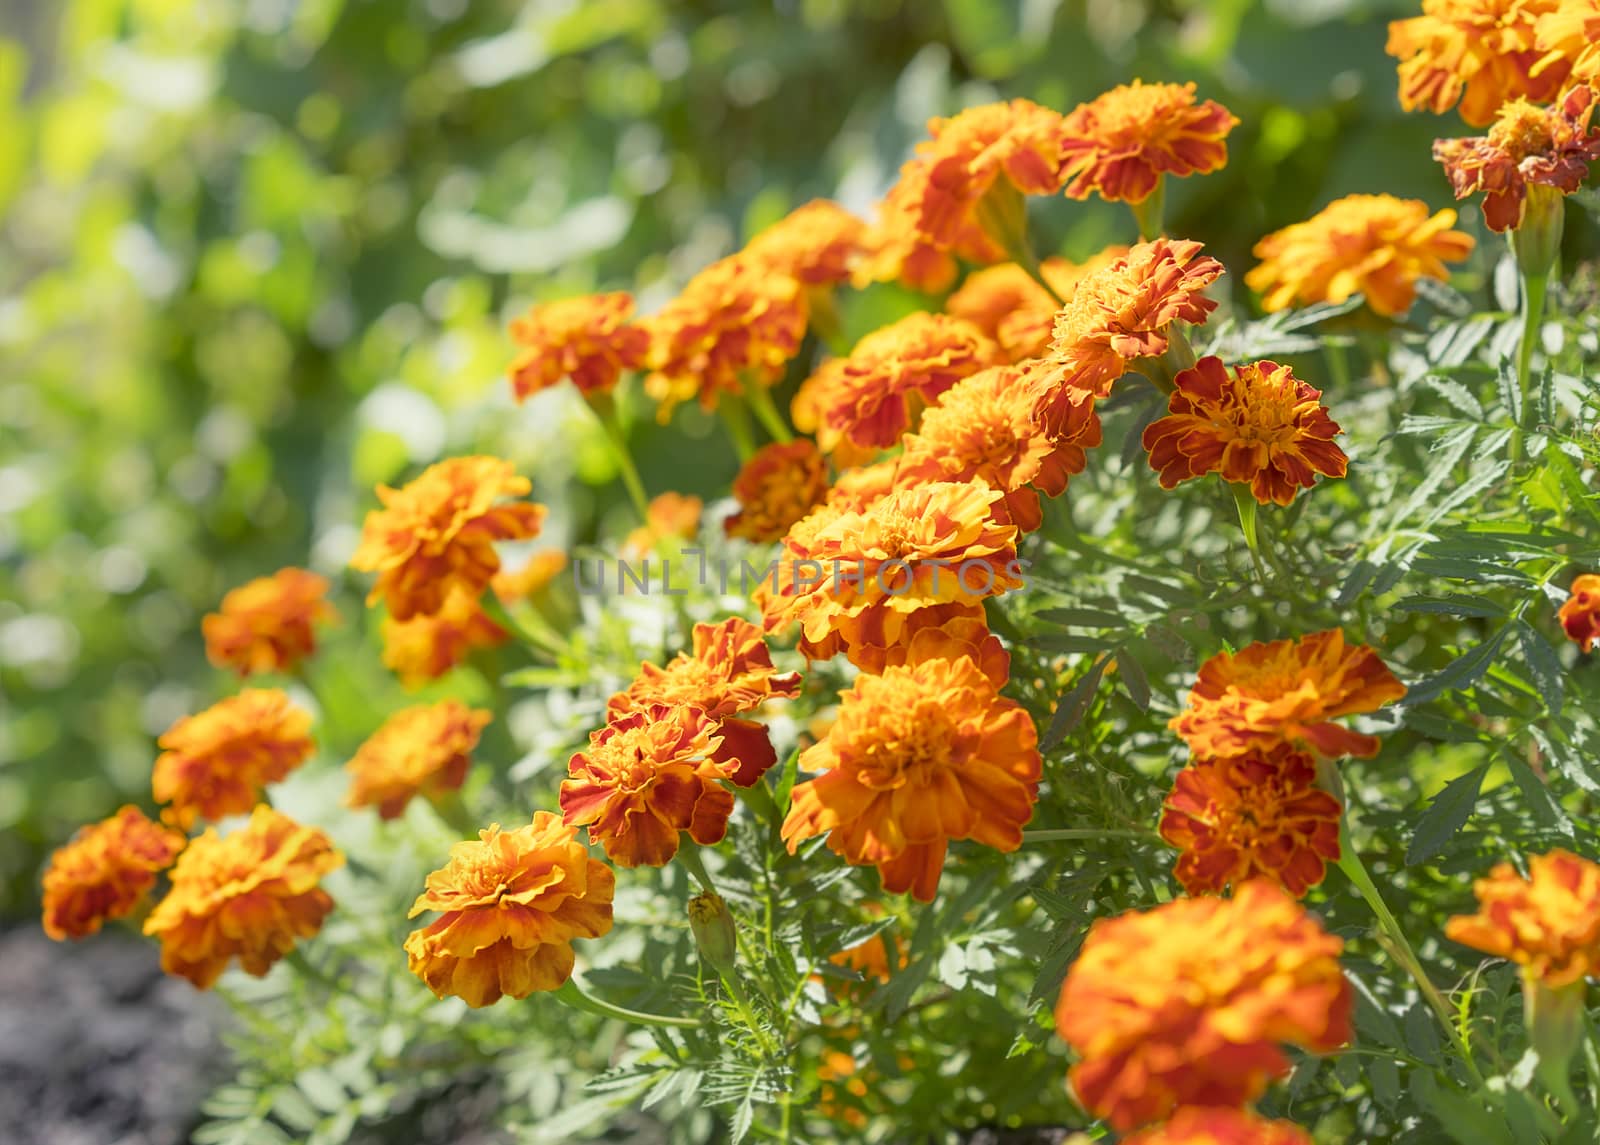 Edible flowers, marigolds in garden by sherj